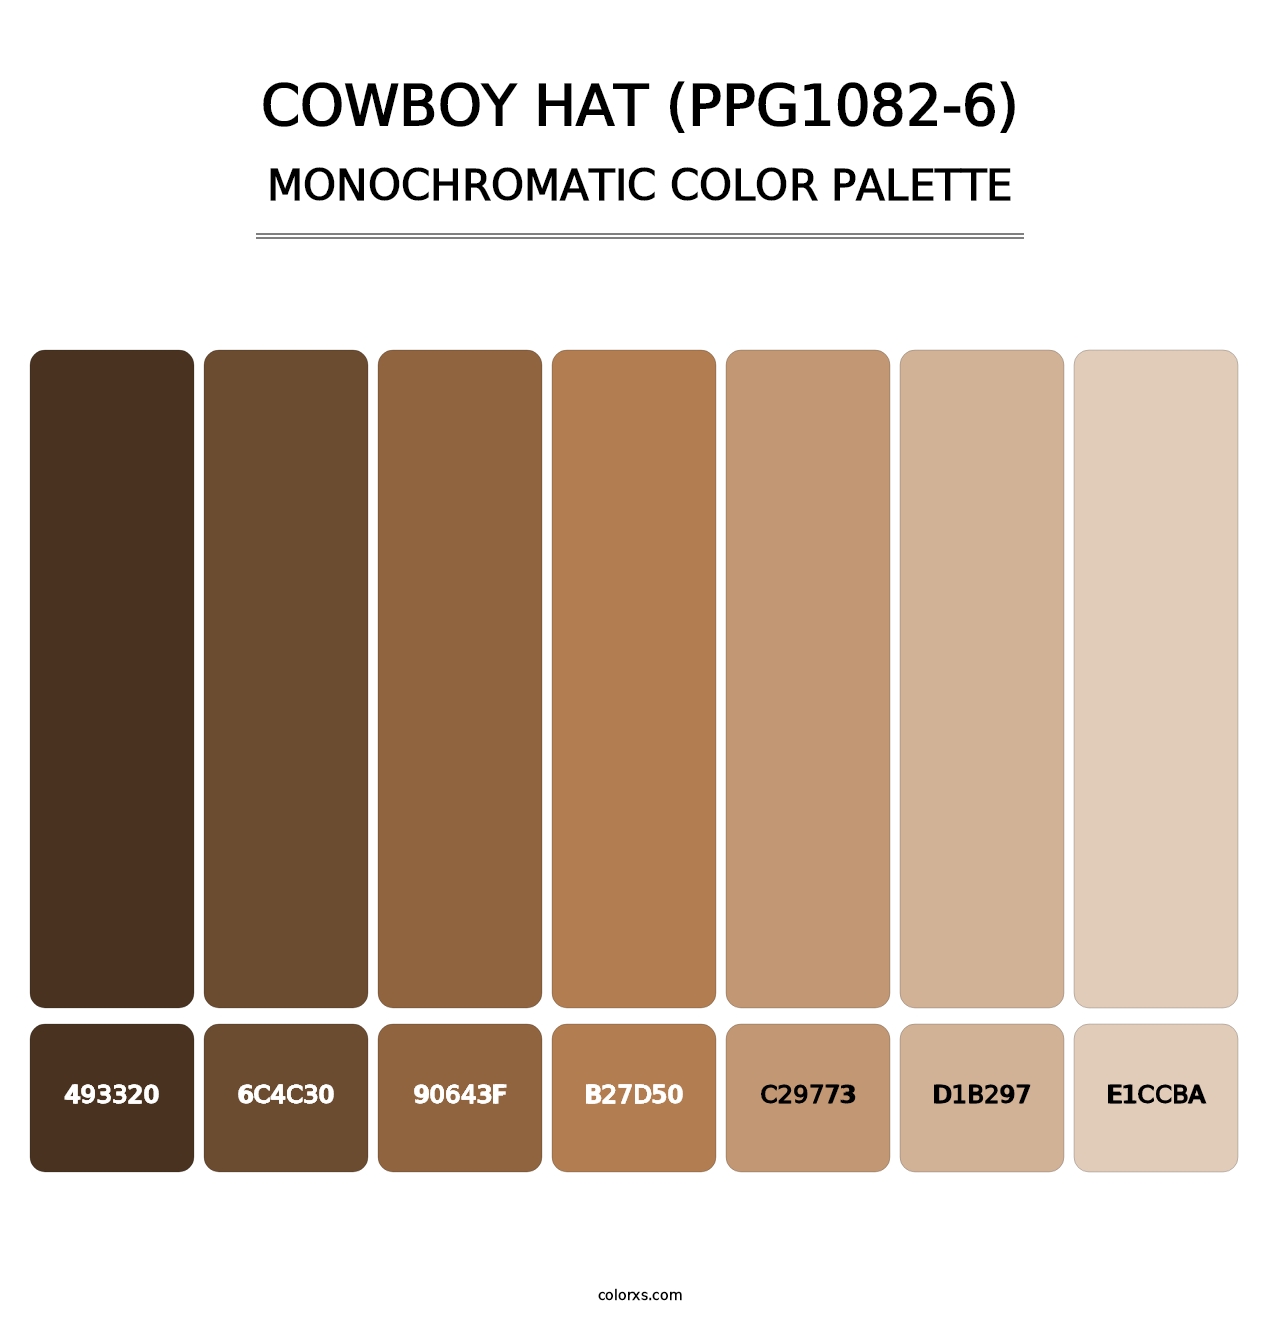 Cowboy Hat (PPG1082-6) - Monochromatic Color Palette